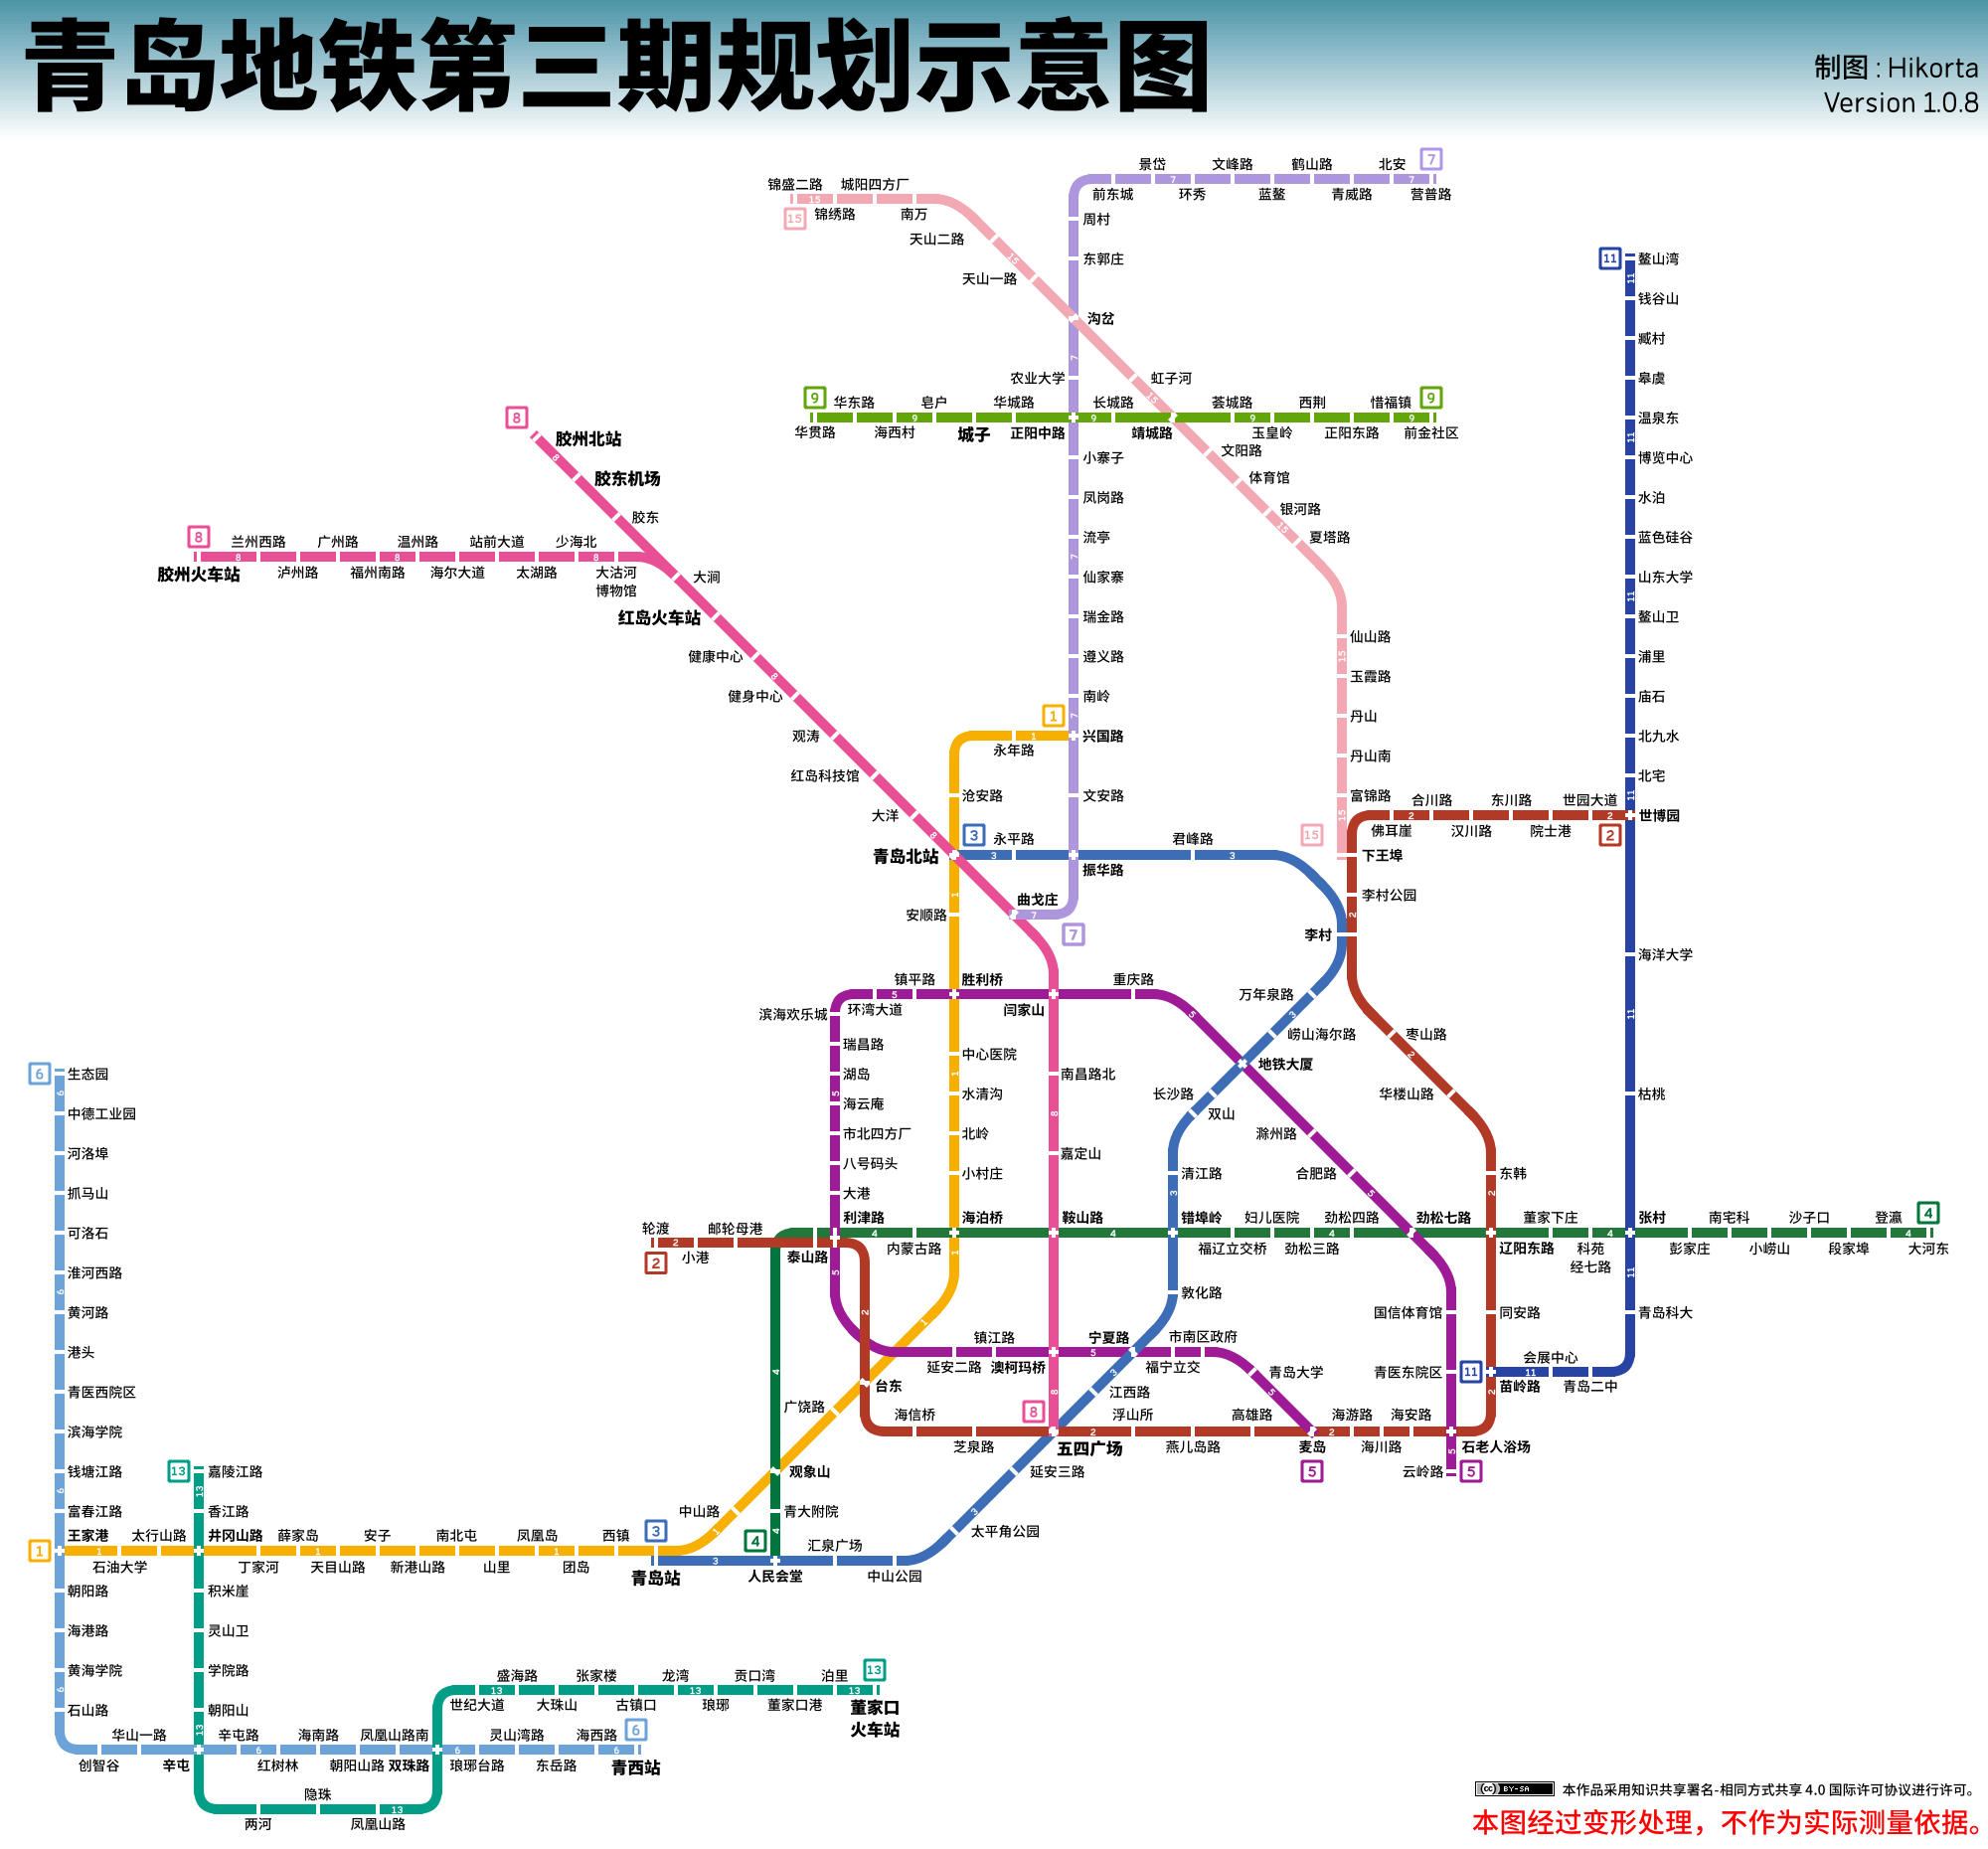 请问哪位大神知道青岛目前建成或者在建以及规划的地铁线路图呀